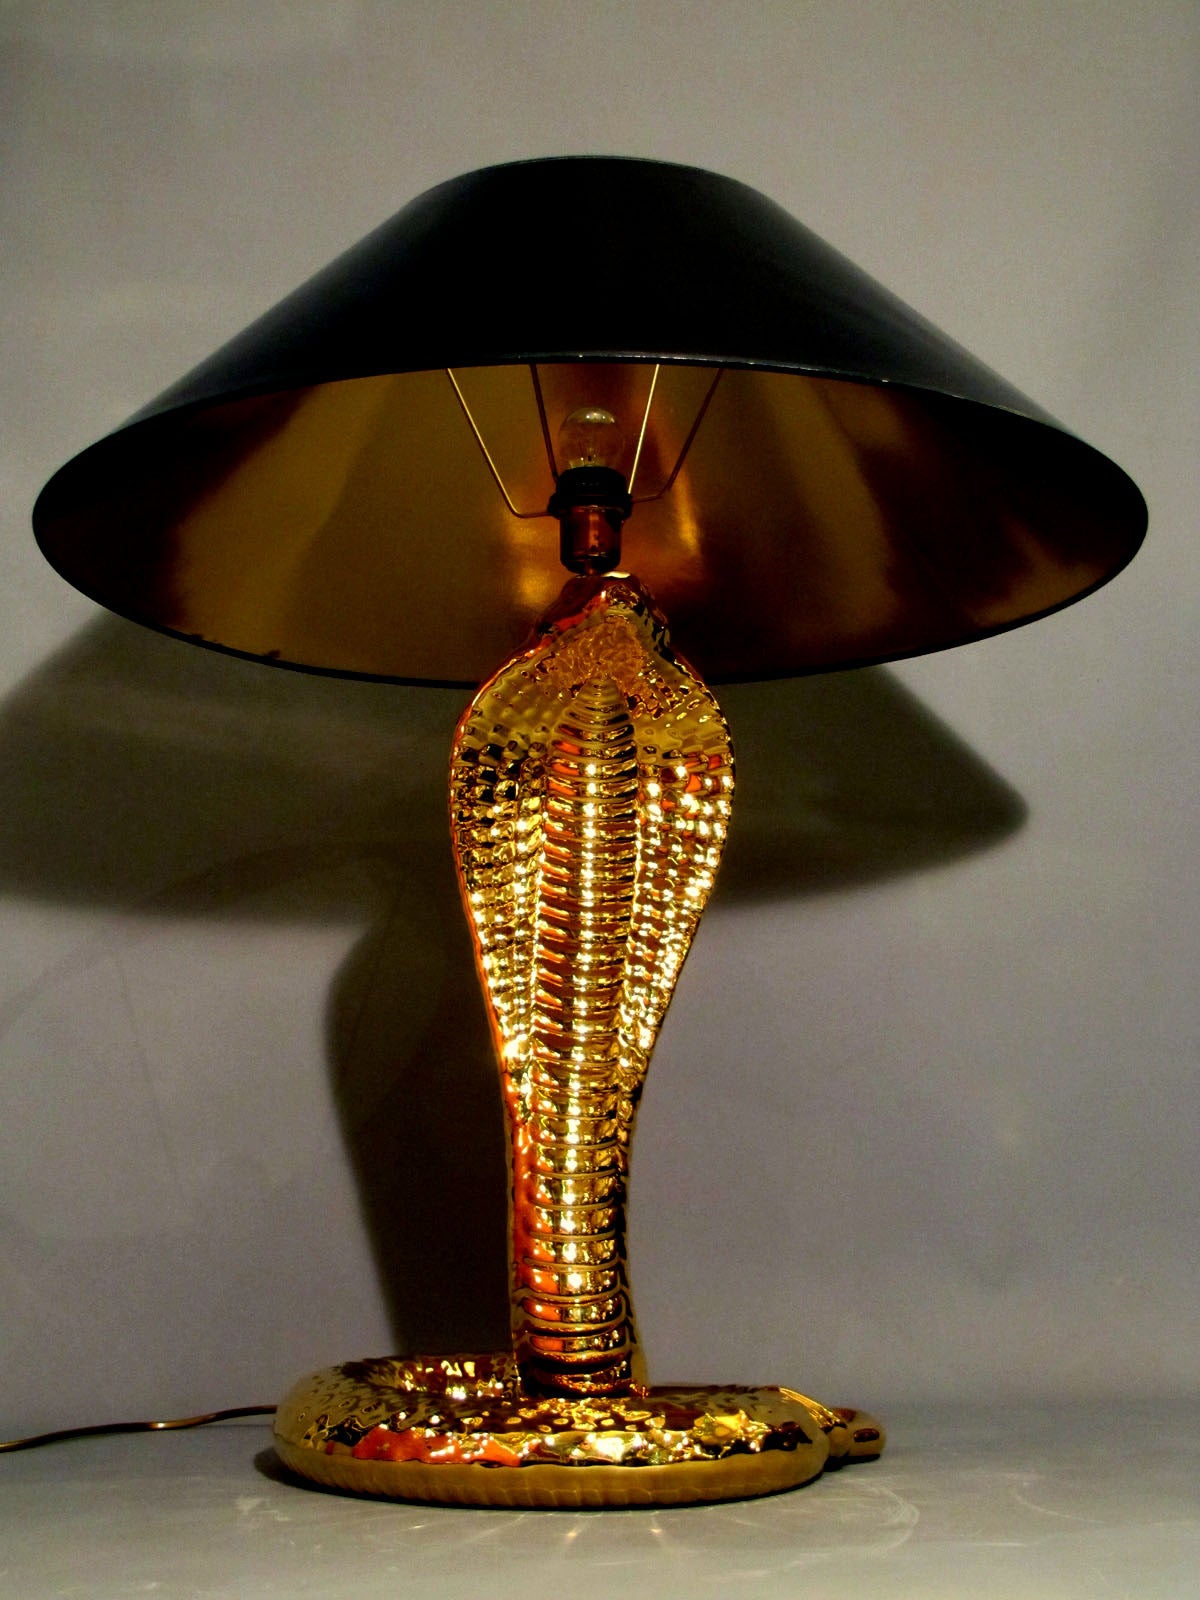 Einzigartige Tischlampe aus goldglasierter Keramik in Form einer Kobra. Ein feines Werk, signiert von Tommaso Barbi, aus dem Jahr 1970. In absolut perfektem Zustand mit originalem Lampenschirm.
Die Höhe ohne Lampenschirm beträgt 63 cm.